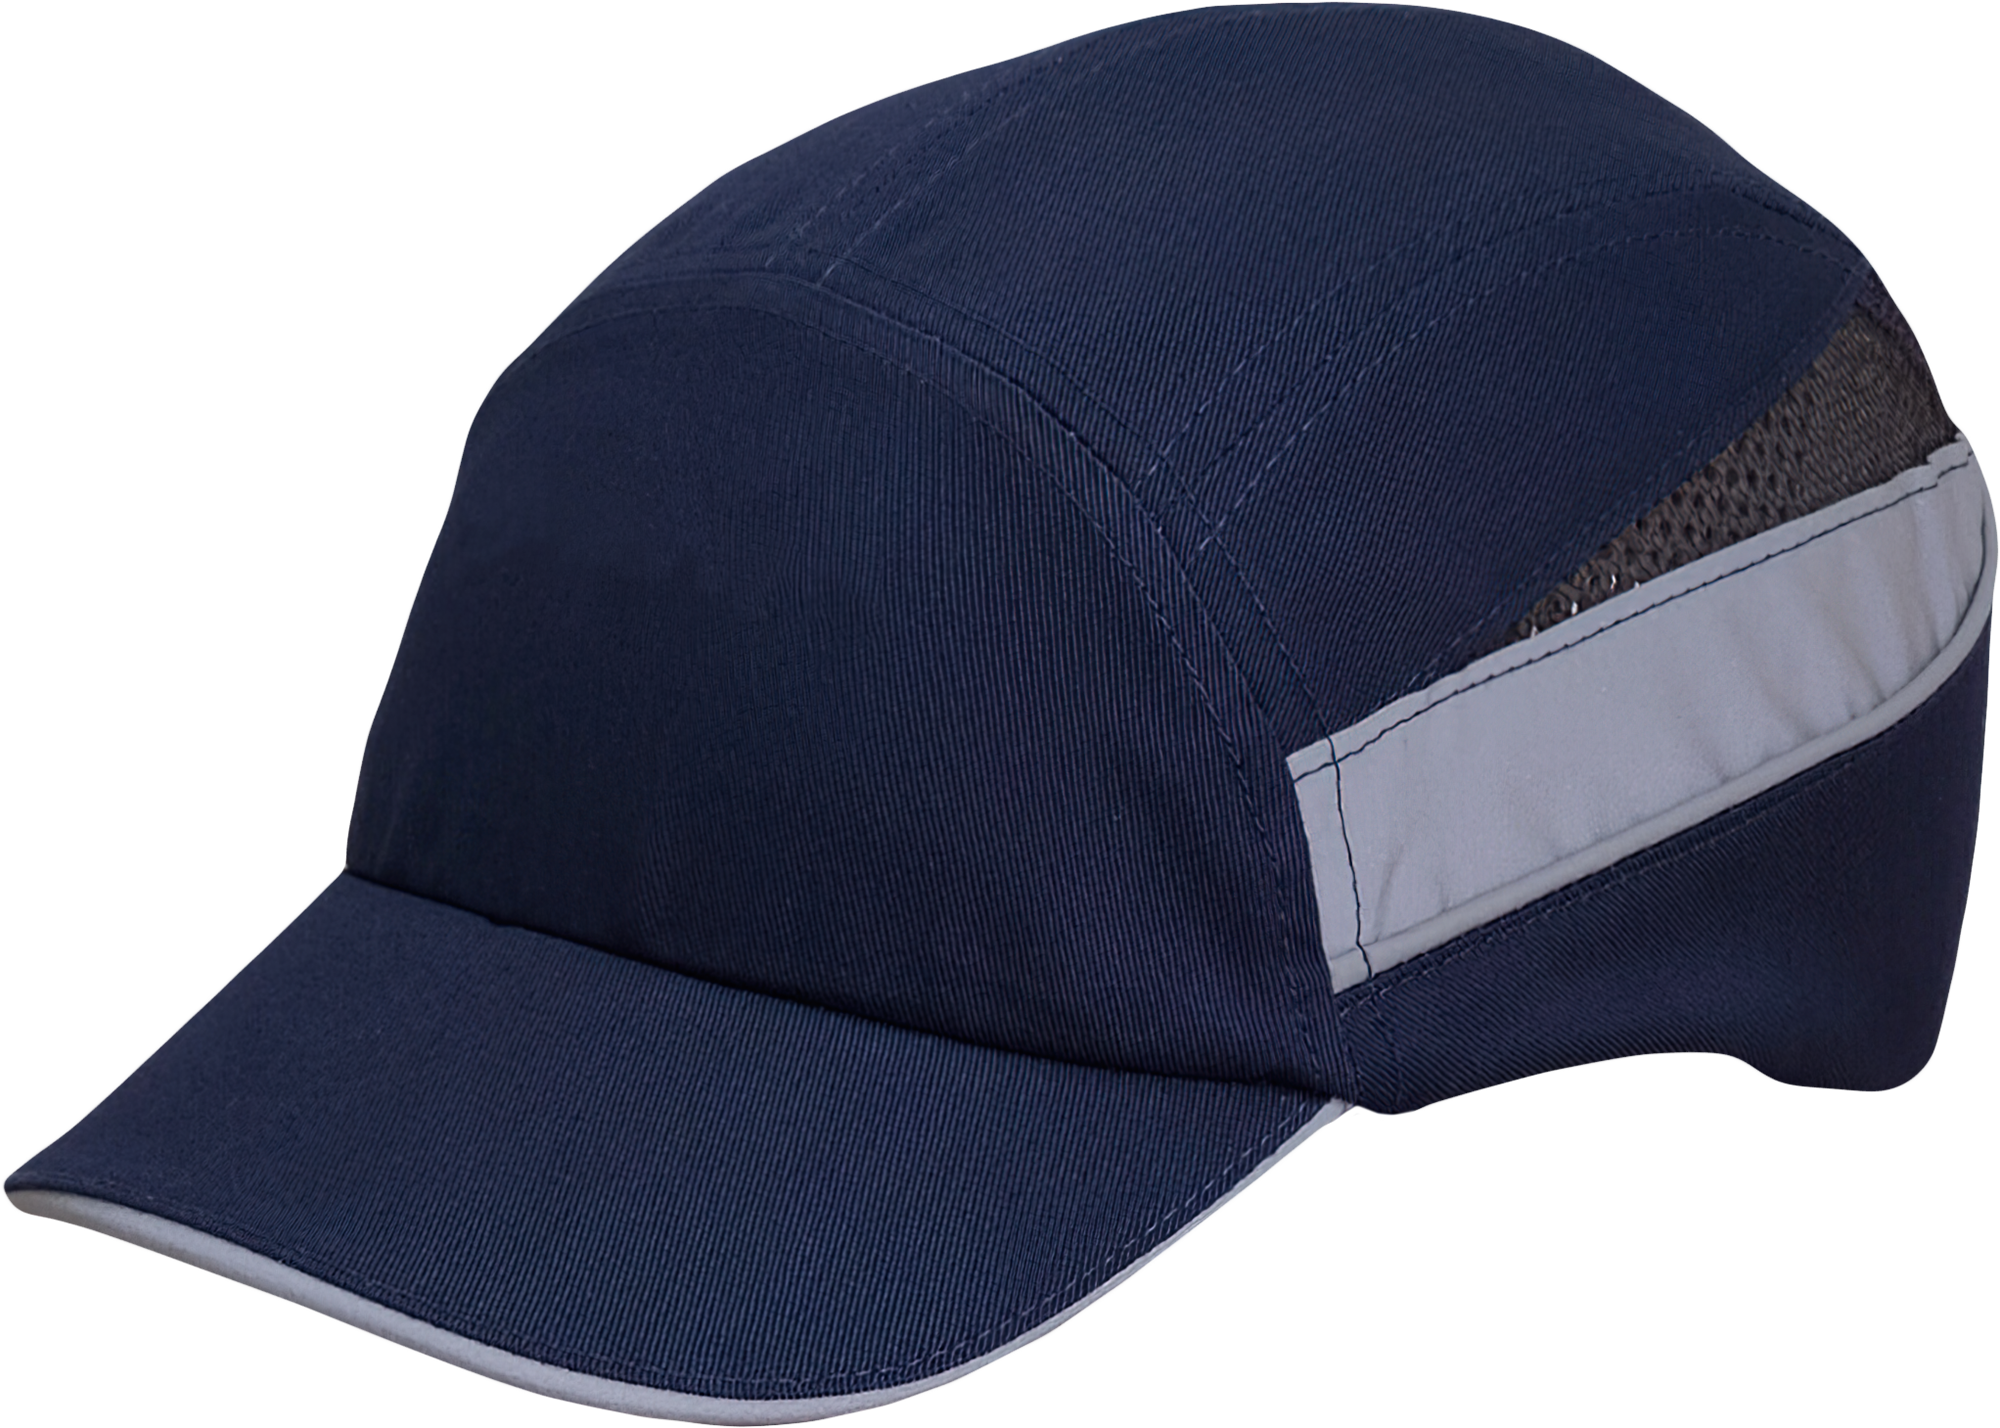 Каскетка РОСОМЗ™ RZ BIOT CAP (92218) синяя, длина козырька 55 мм, светоотражающие полосы – 1